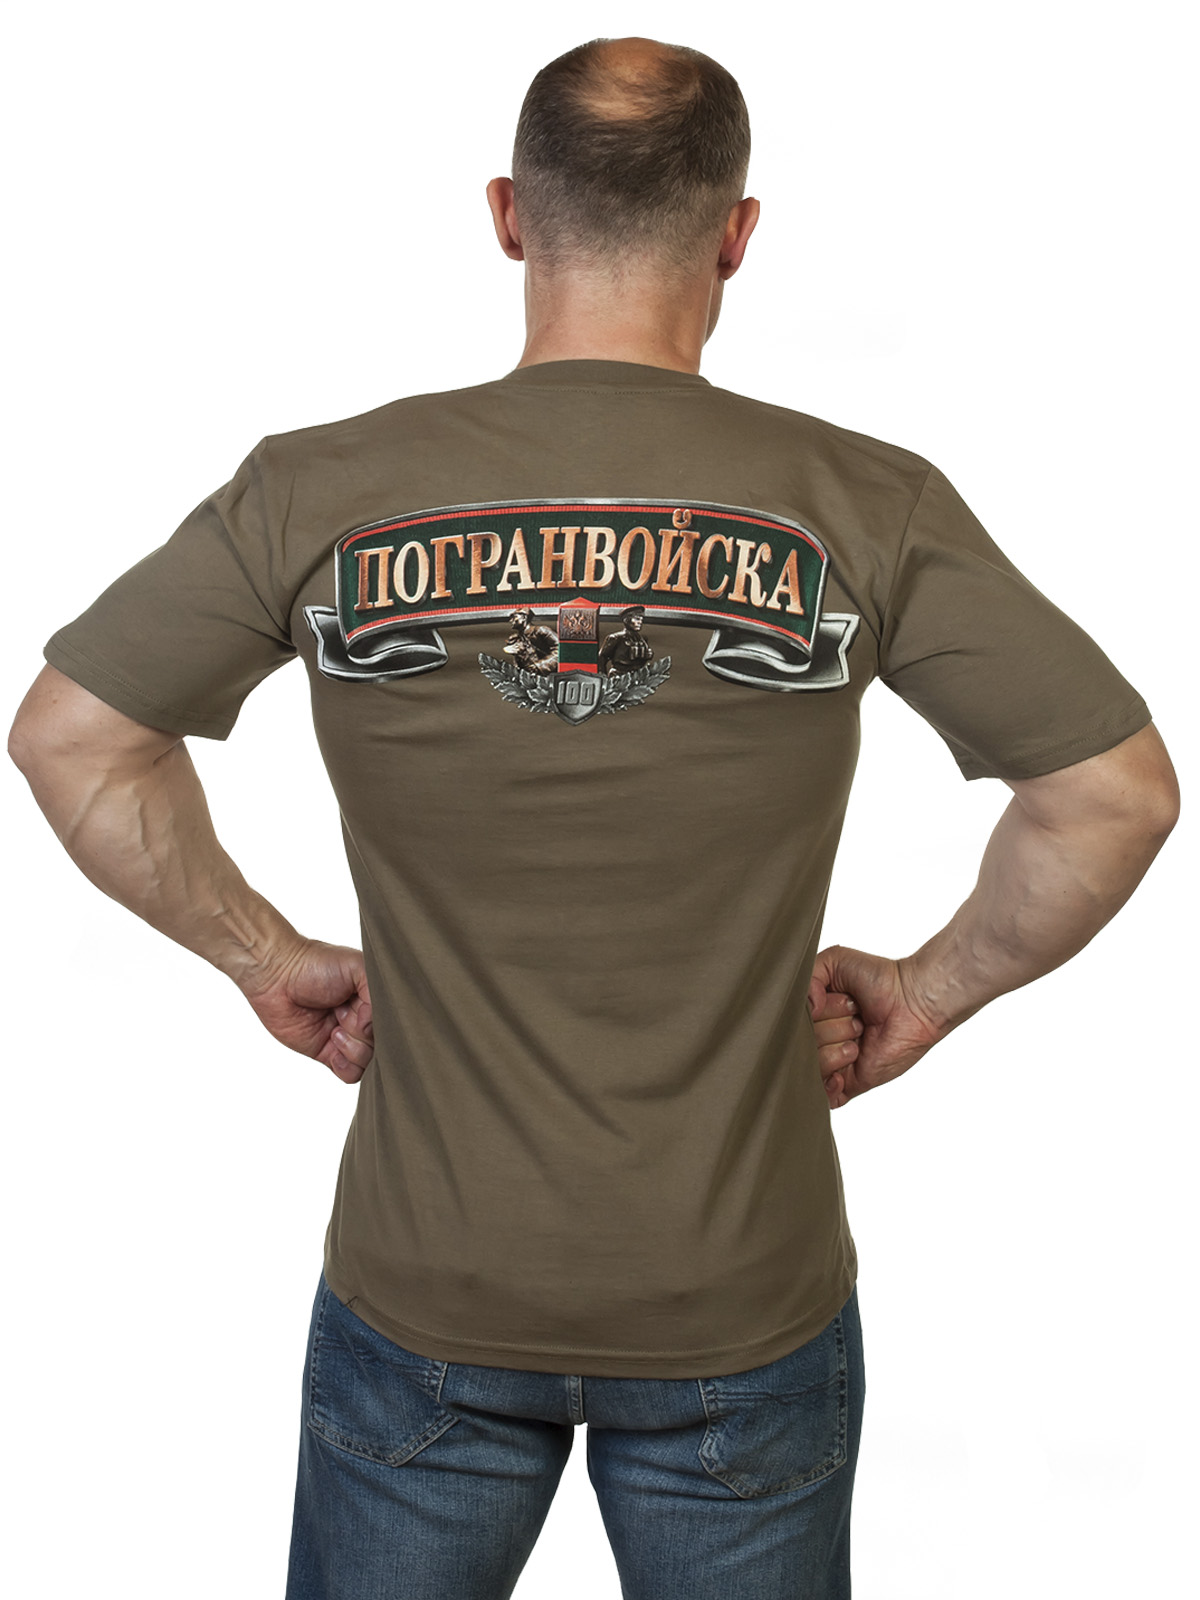 Заказать футболку к 100-летию Пограничных войск с доставкой